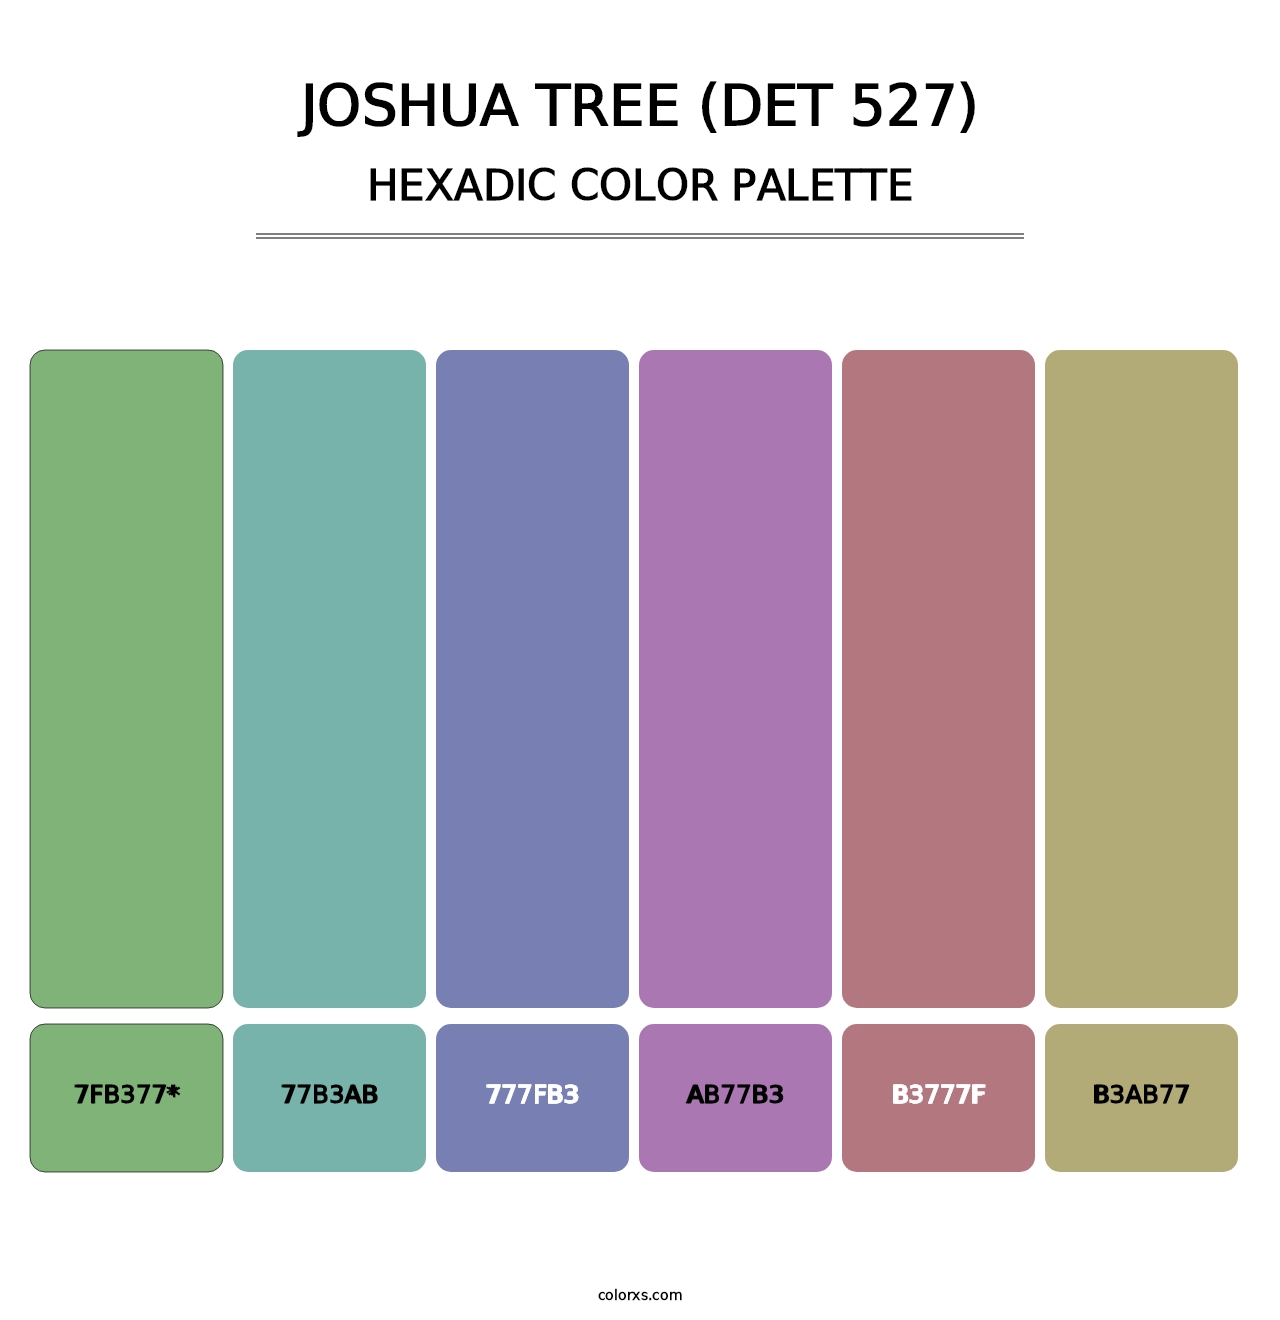 Joshua Tree (DET 527) - Hexadic Color Palette